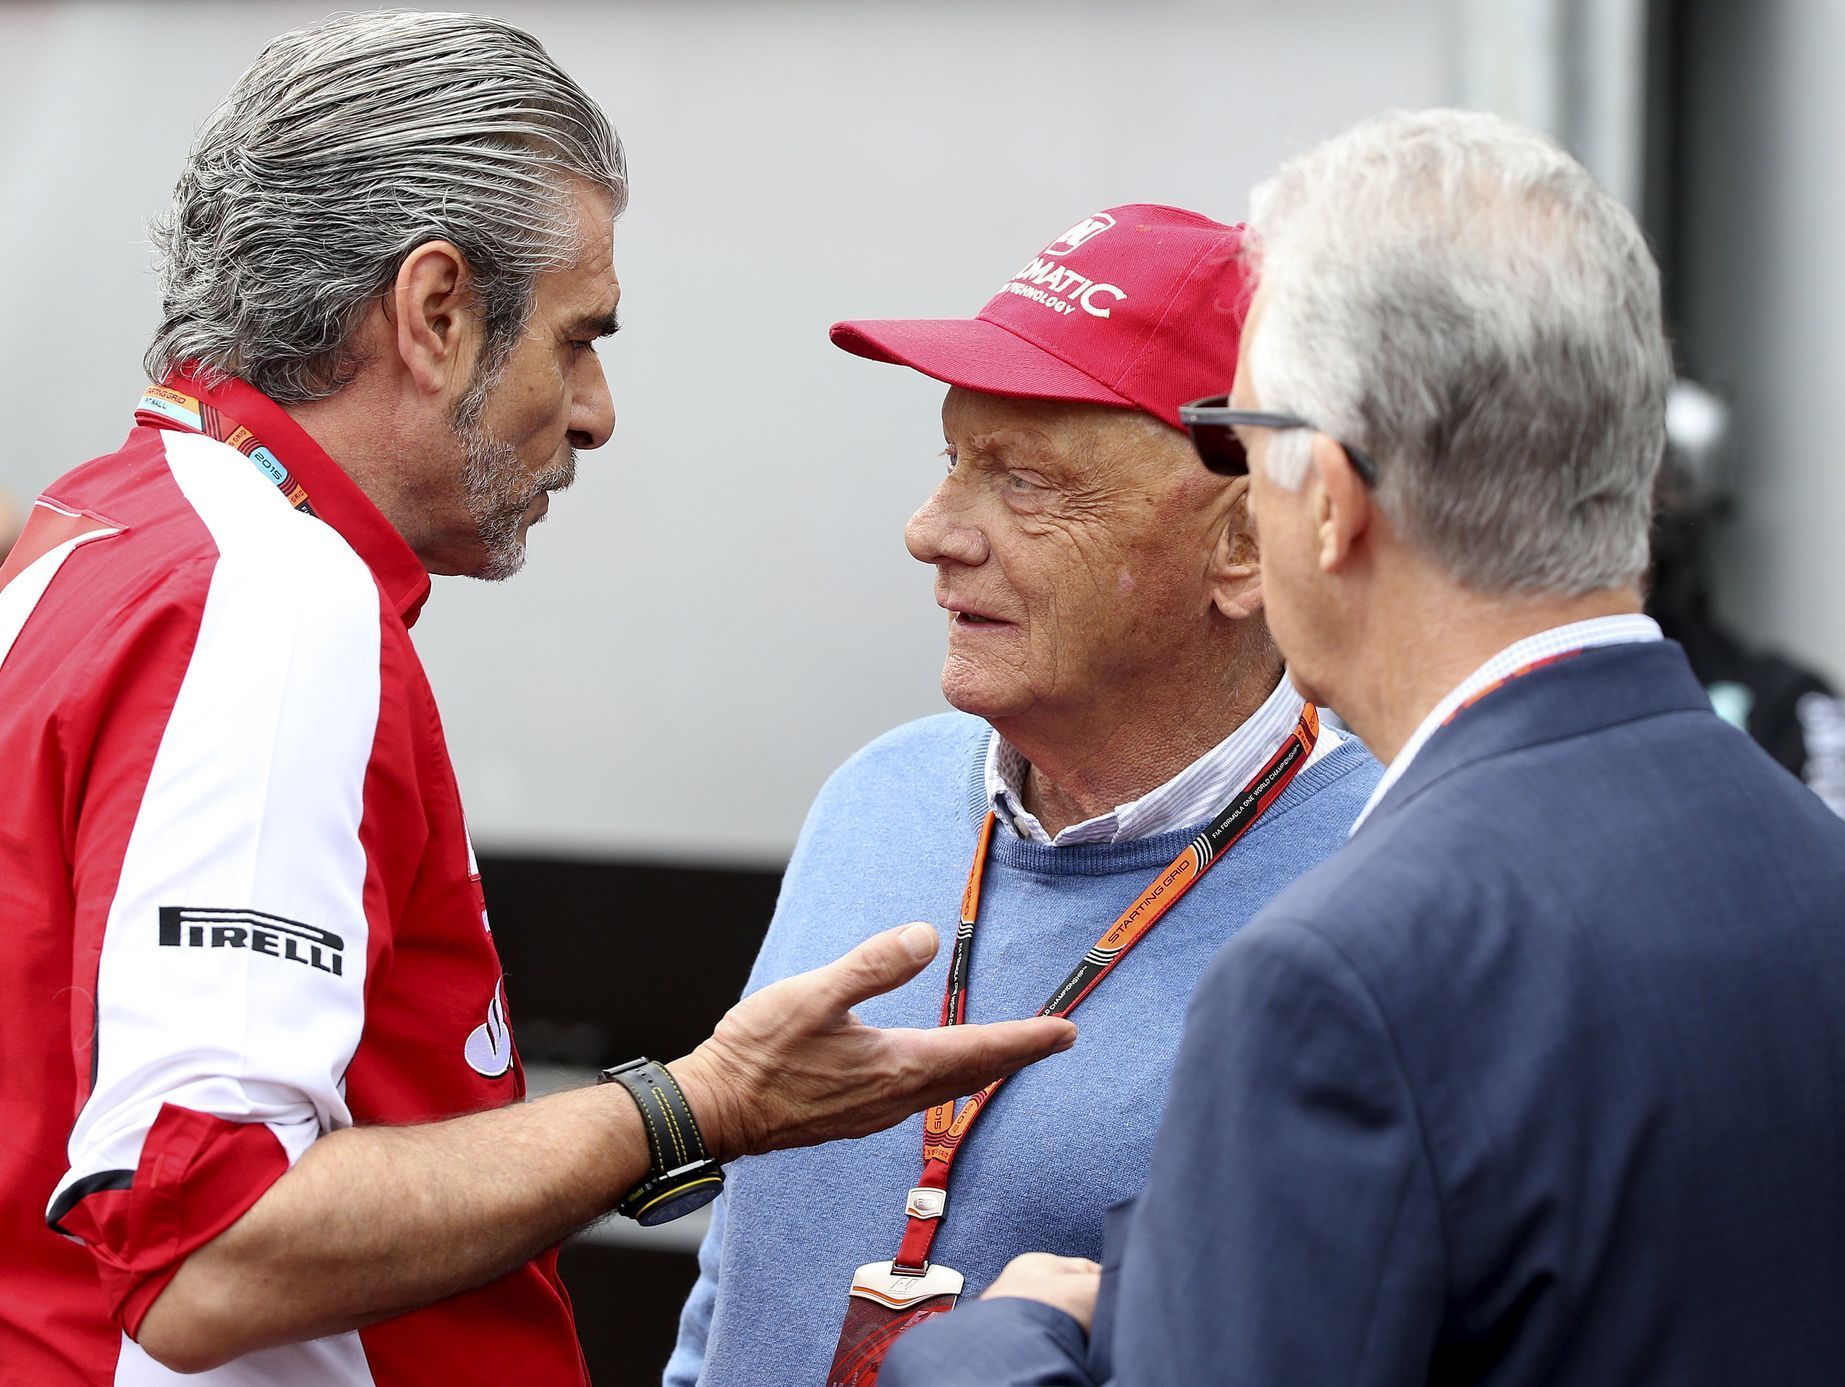 F1, VC Monaka 2015: šéf Ferrari Maurizio Arrivabene; Niki Lauda; Lardi Ferrari , viceprezident Ferrari